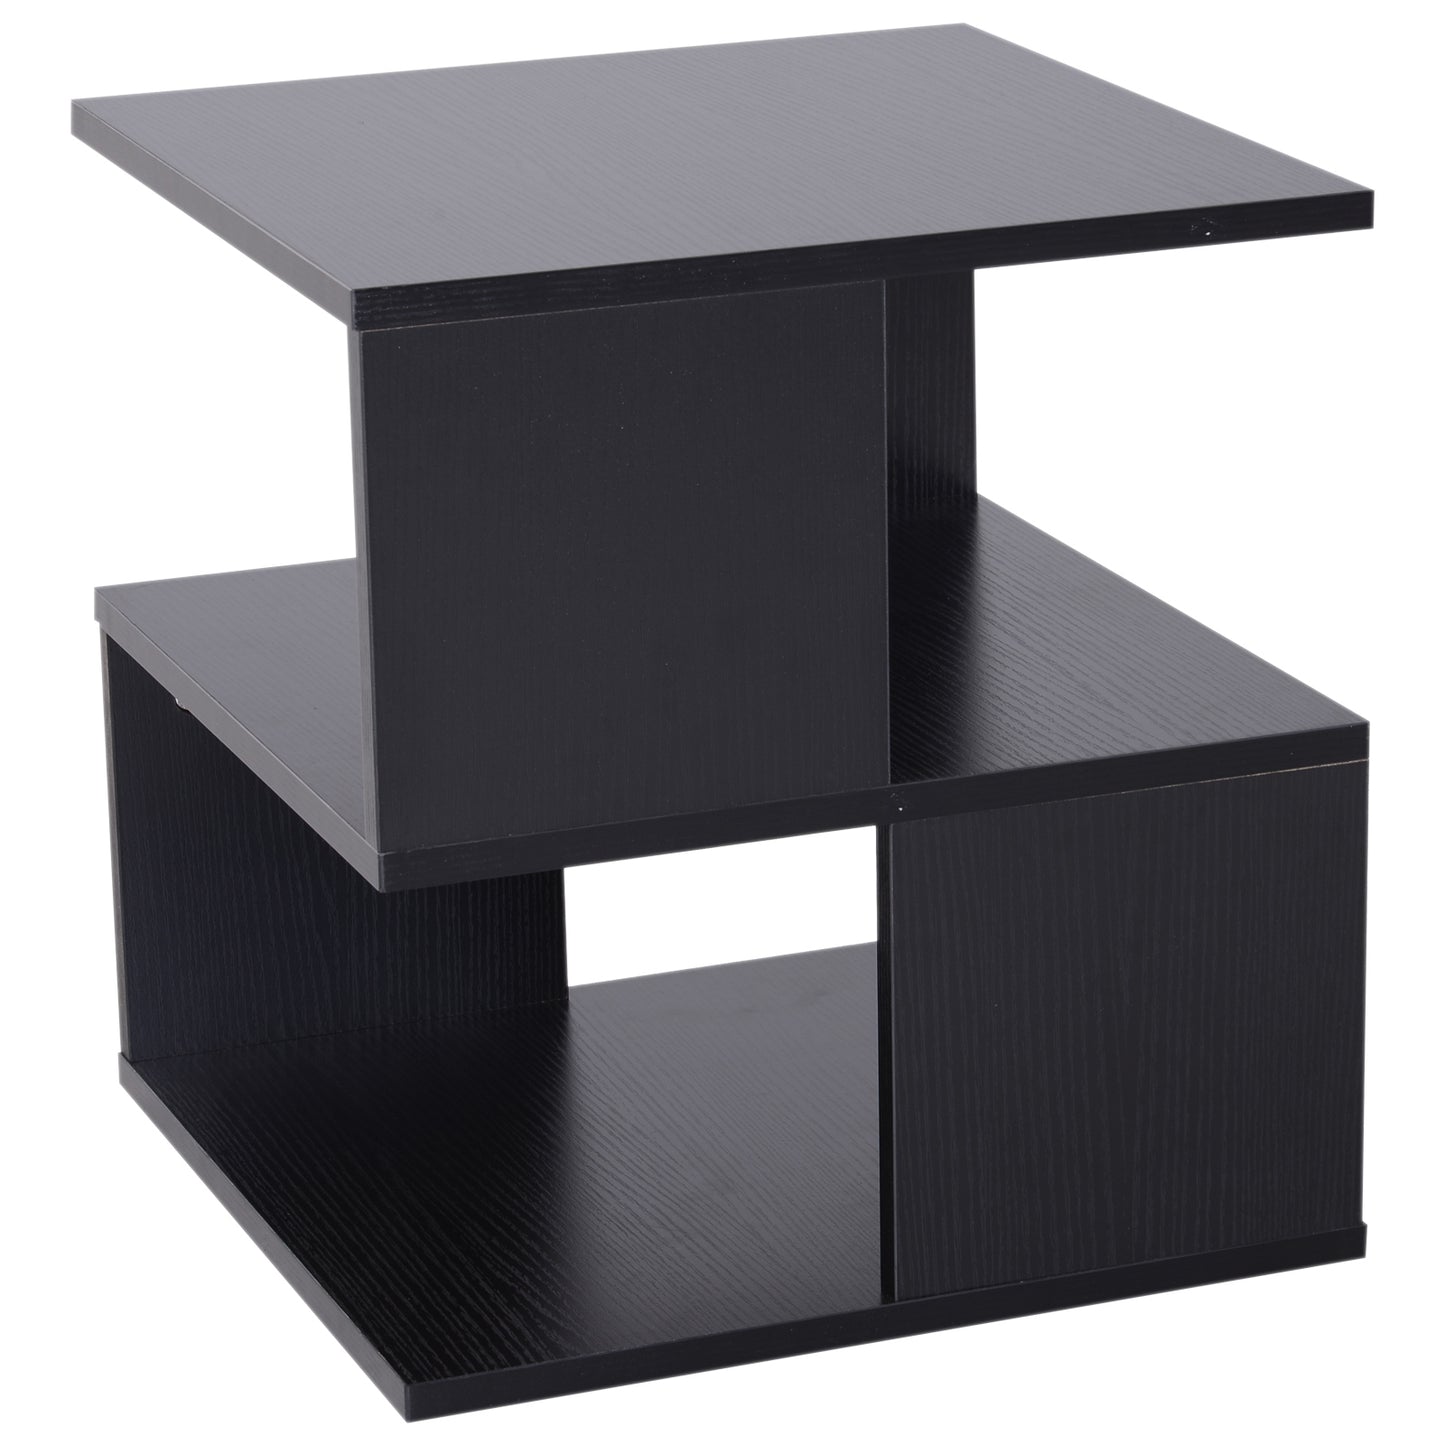 HOMCOM 2-Tier Side Table, 40Lx40Wx43H cm-Black